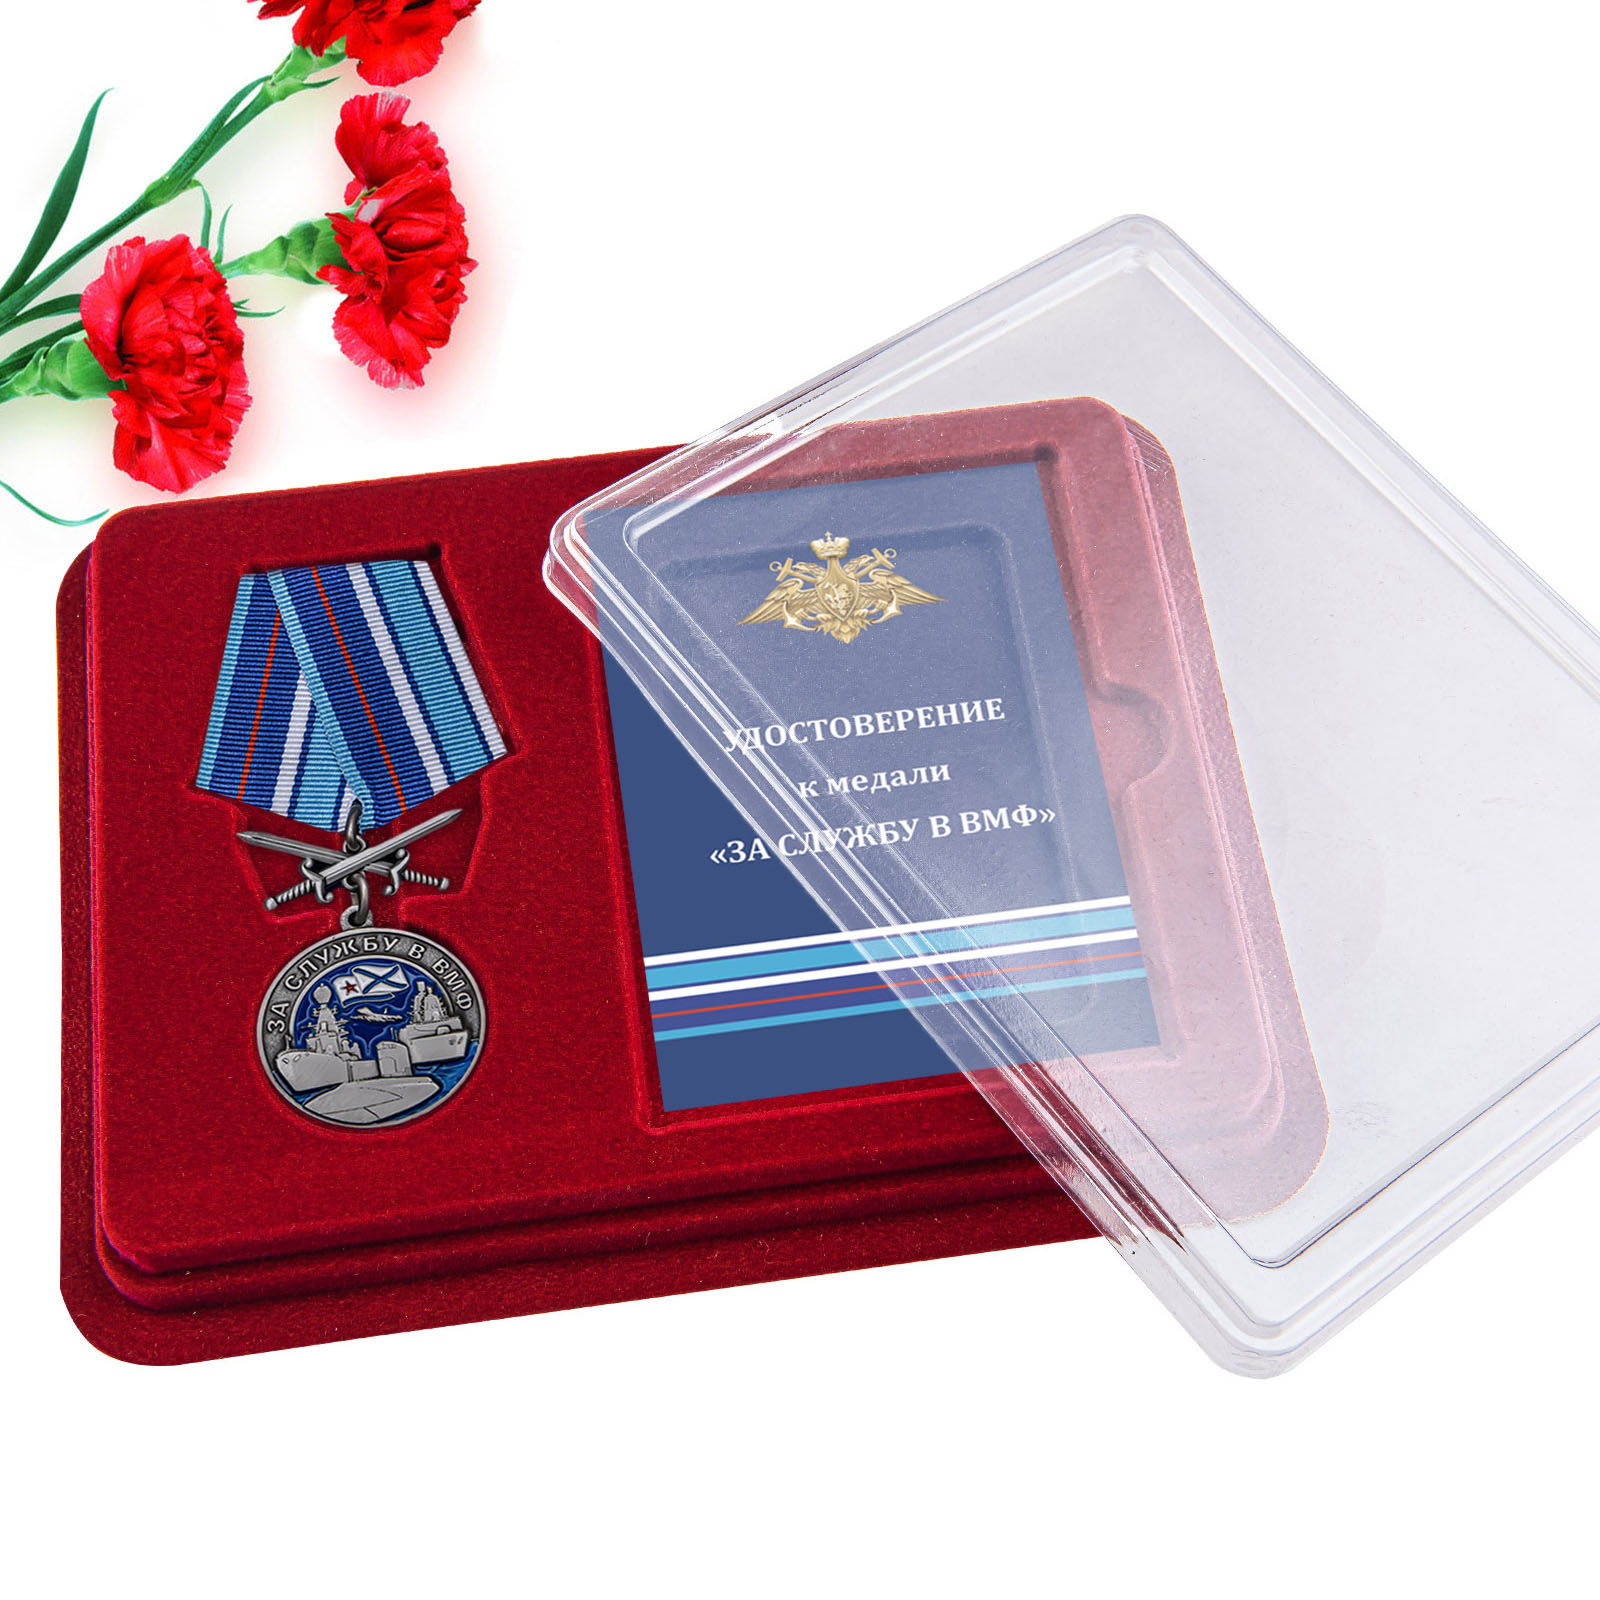 Купить медаль За службу в ВМФ по экономичной цене